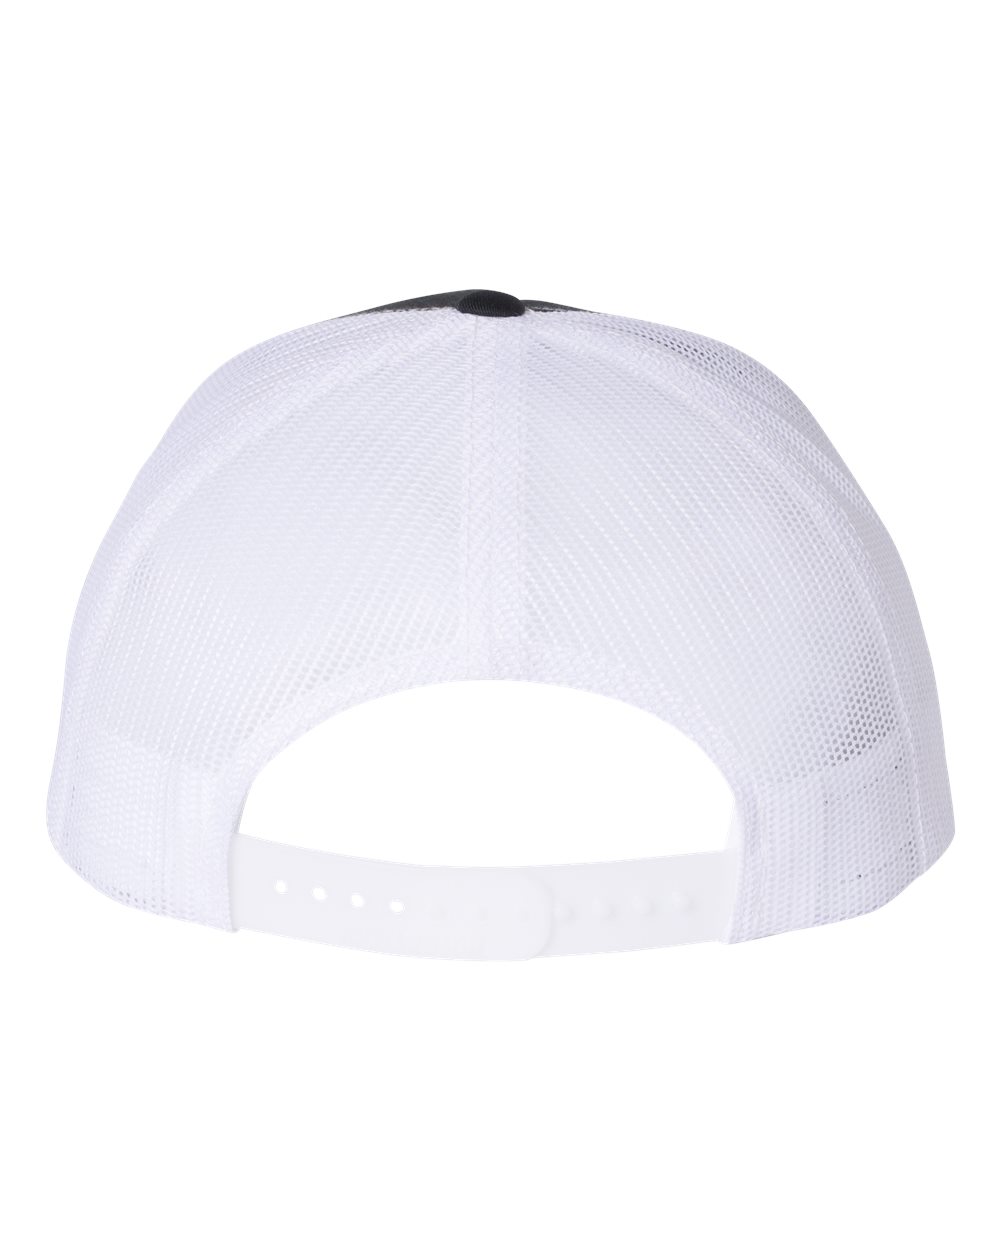 Navy/White Trucker Hat-Snapback